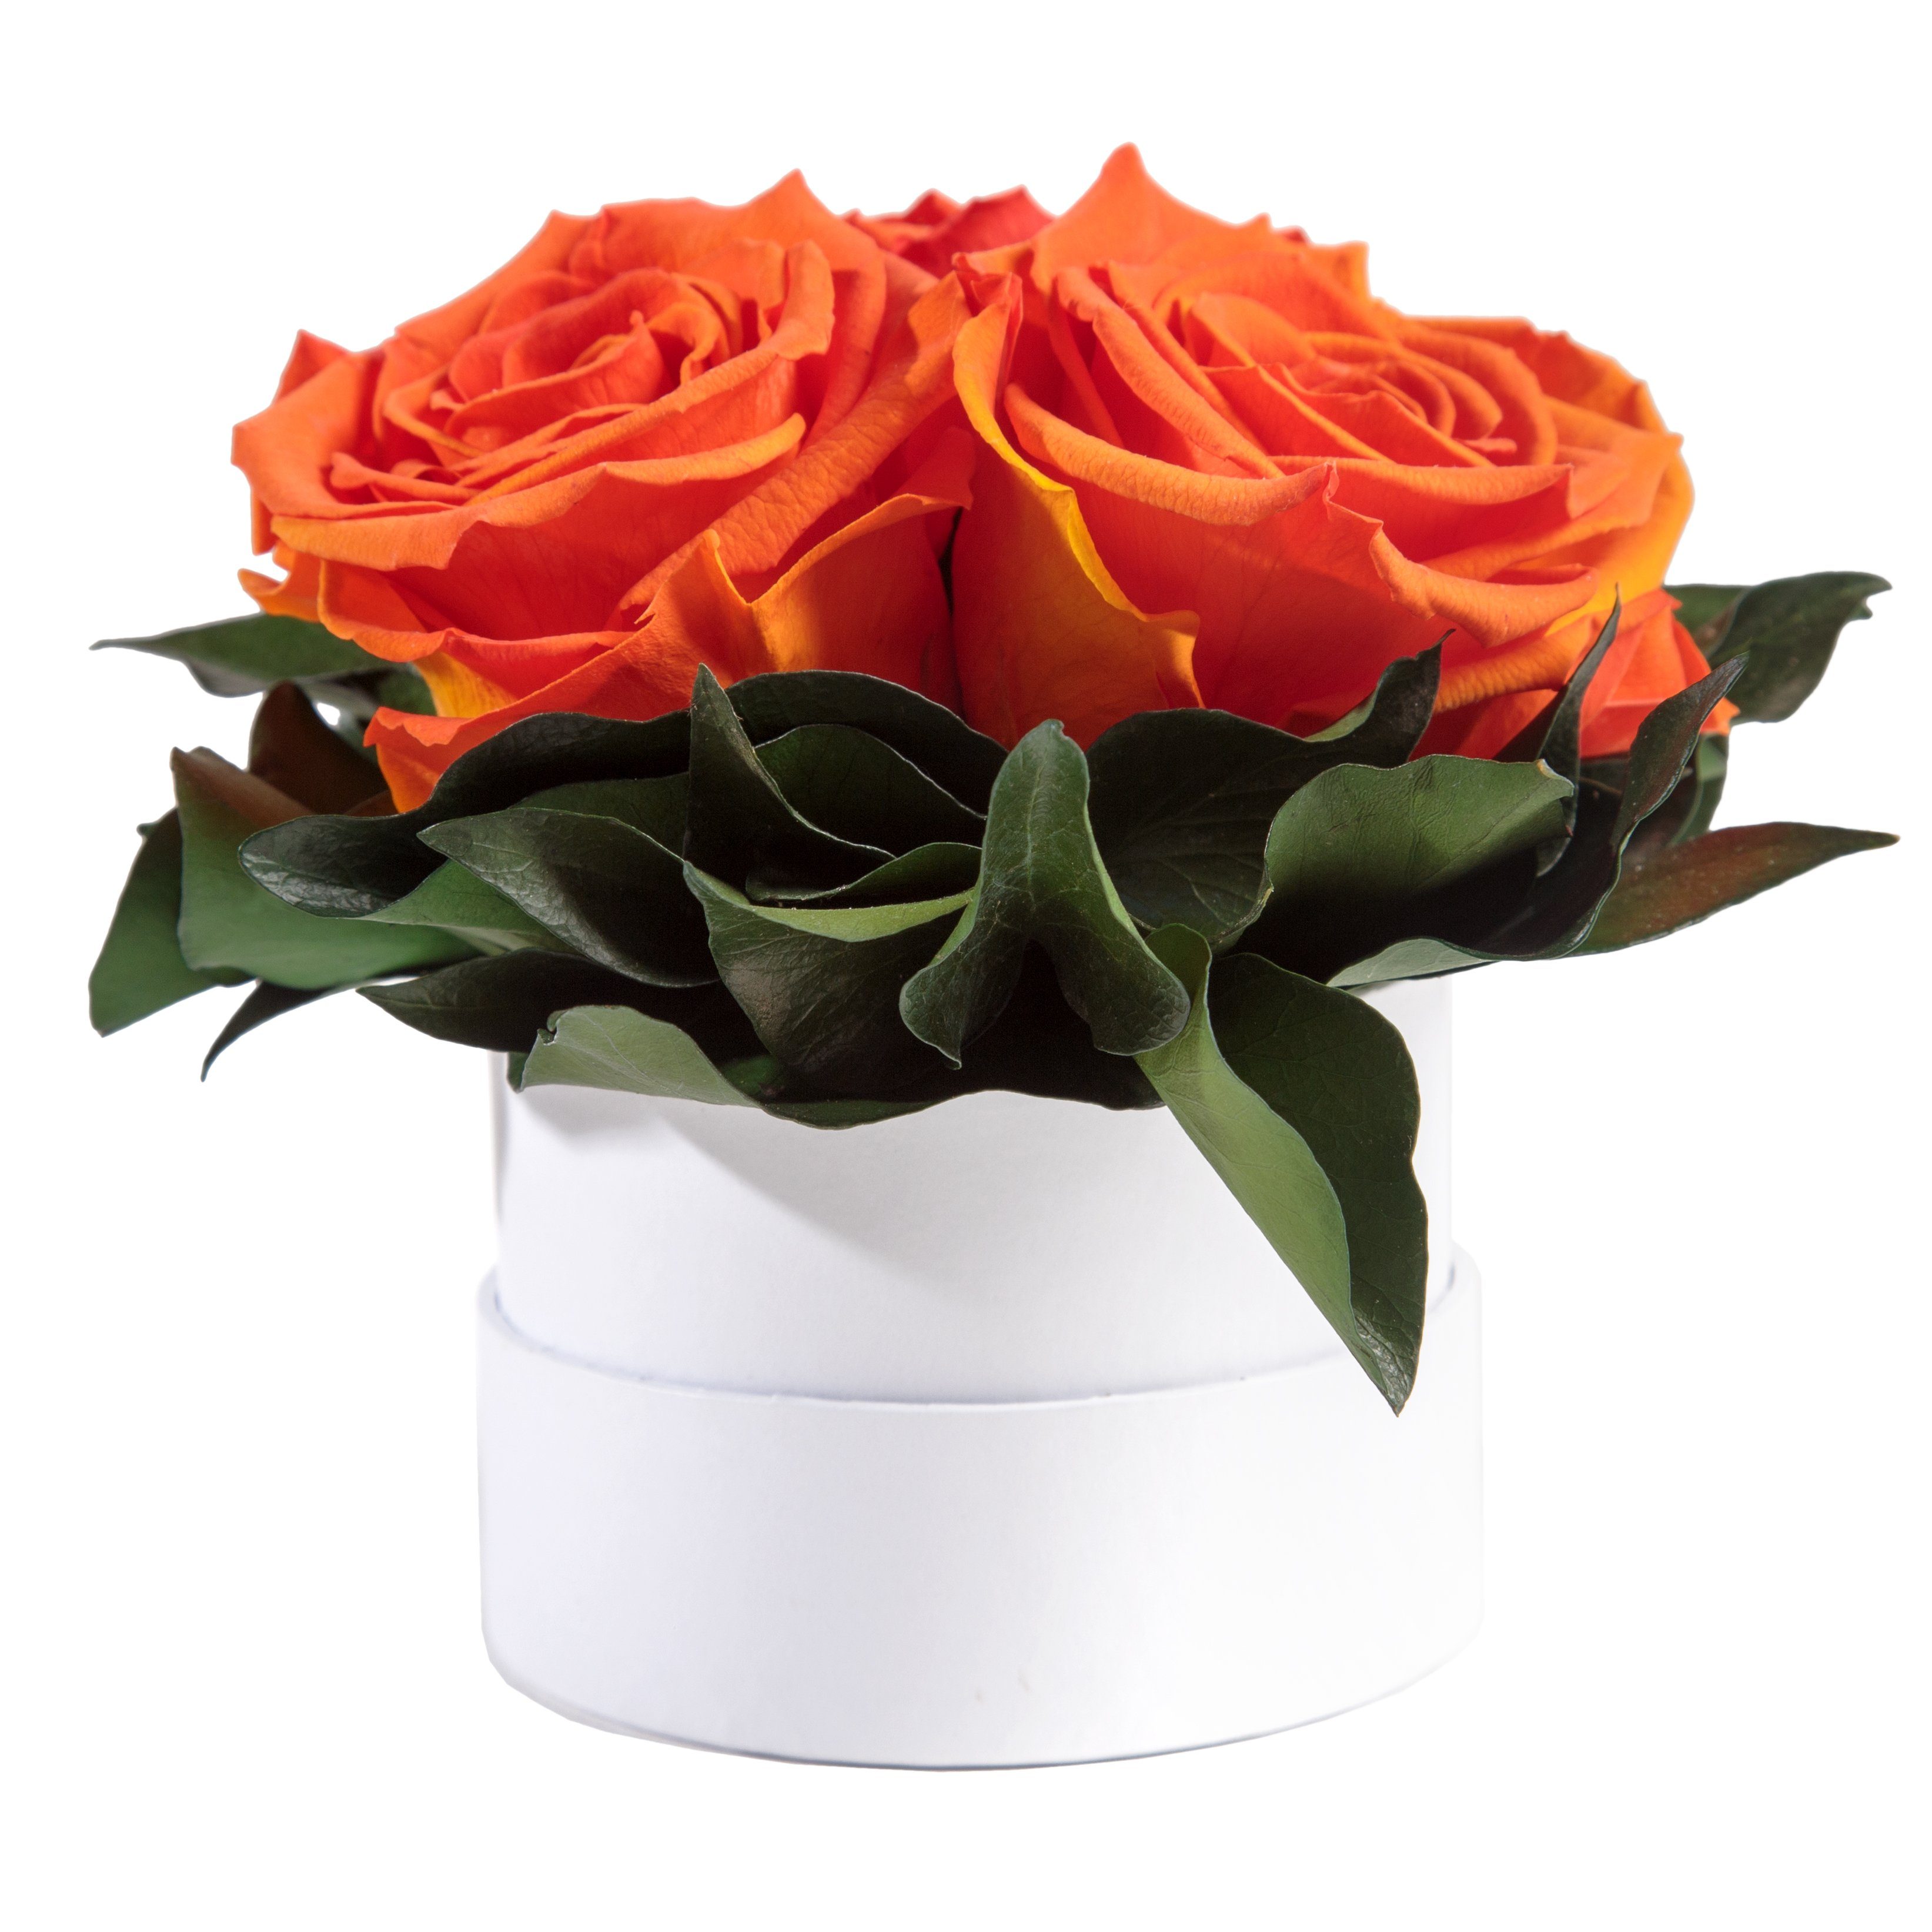 Infinity echte Geschenk SCHULZ Kunstblume weiß Heidelberg, rund 10 Rose, Höhe Orange cm, konserviert für Rosen Rosenbox ROSEMARIE Rosen 3 Sie